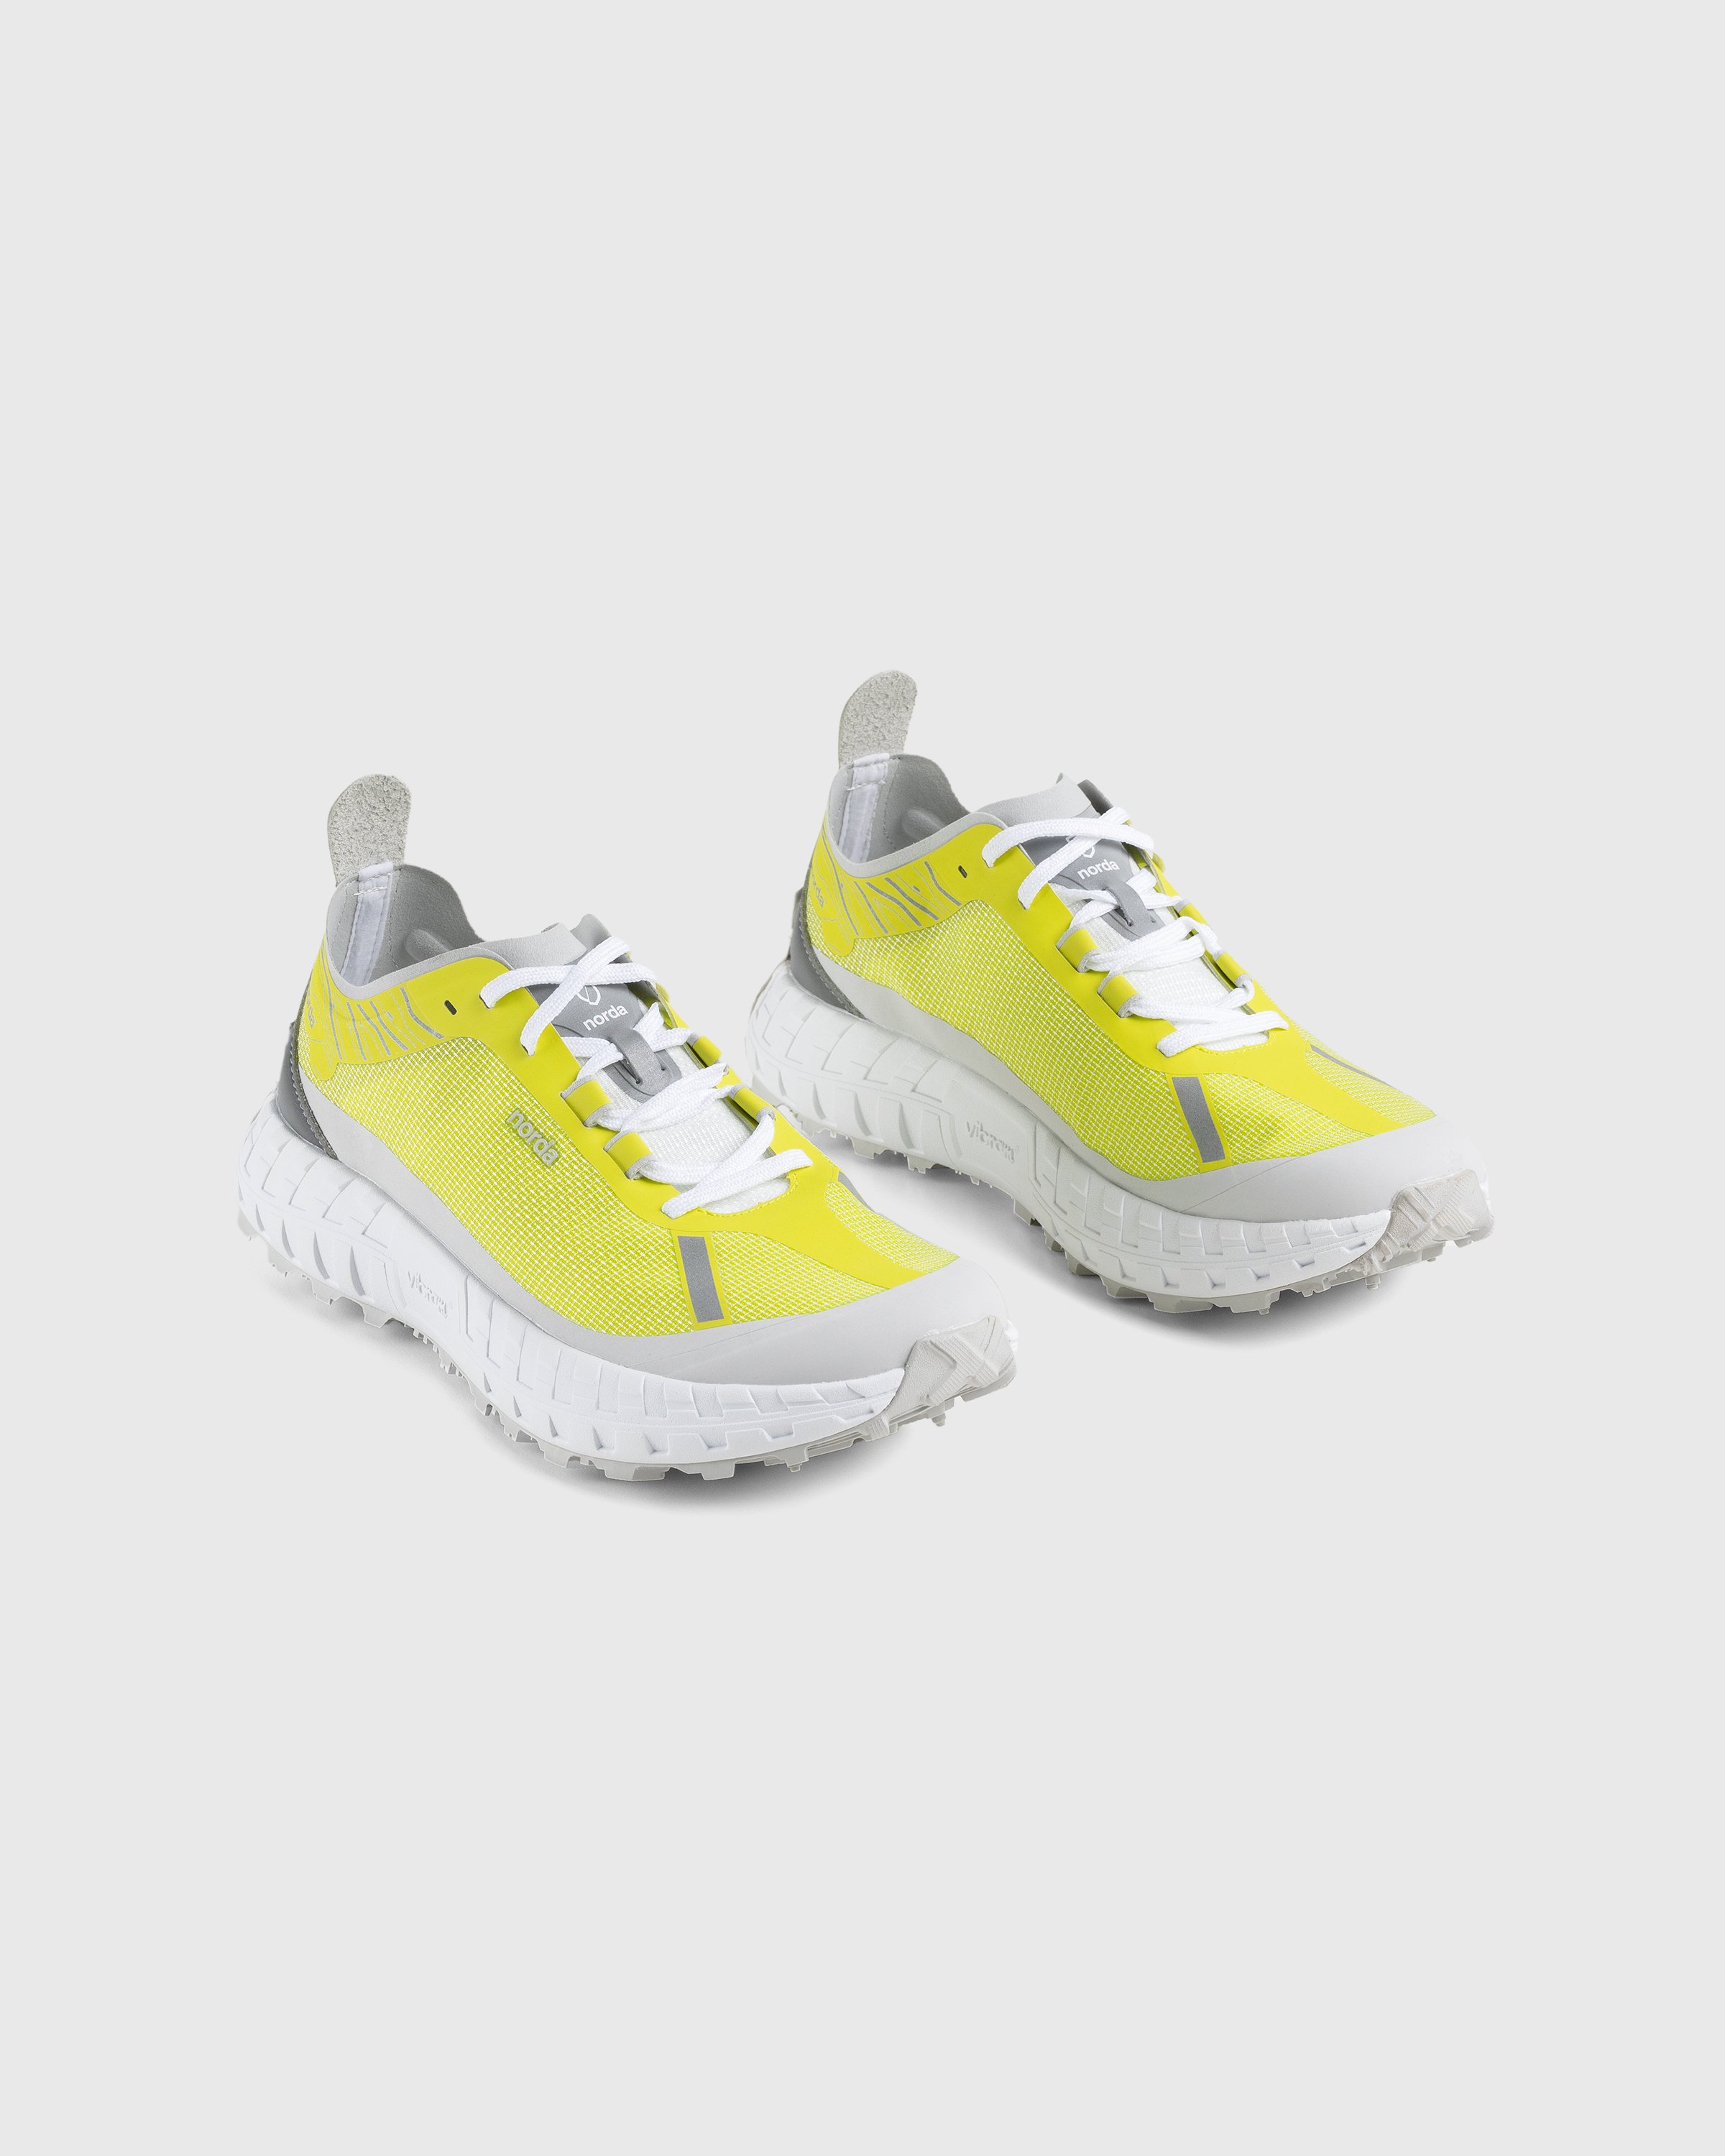 Norda - 001 M Sulphur - Footwear - Yellow - Image 3